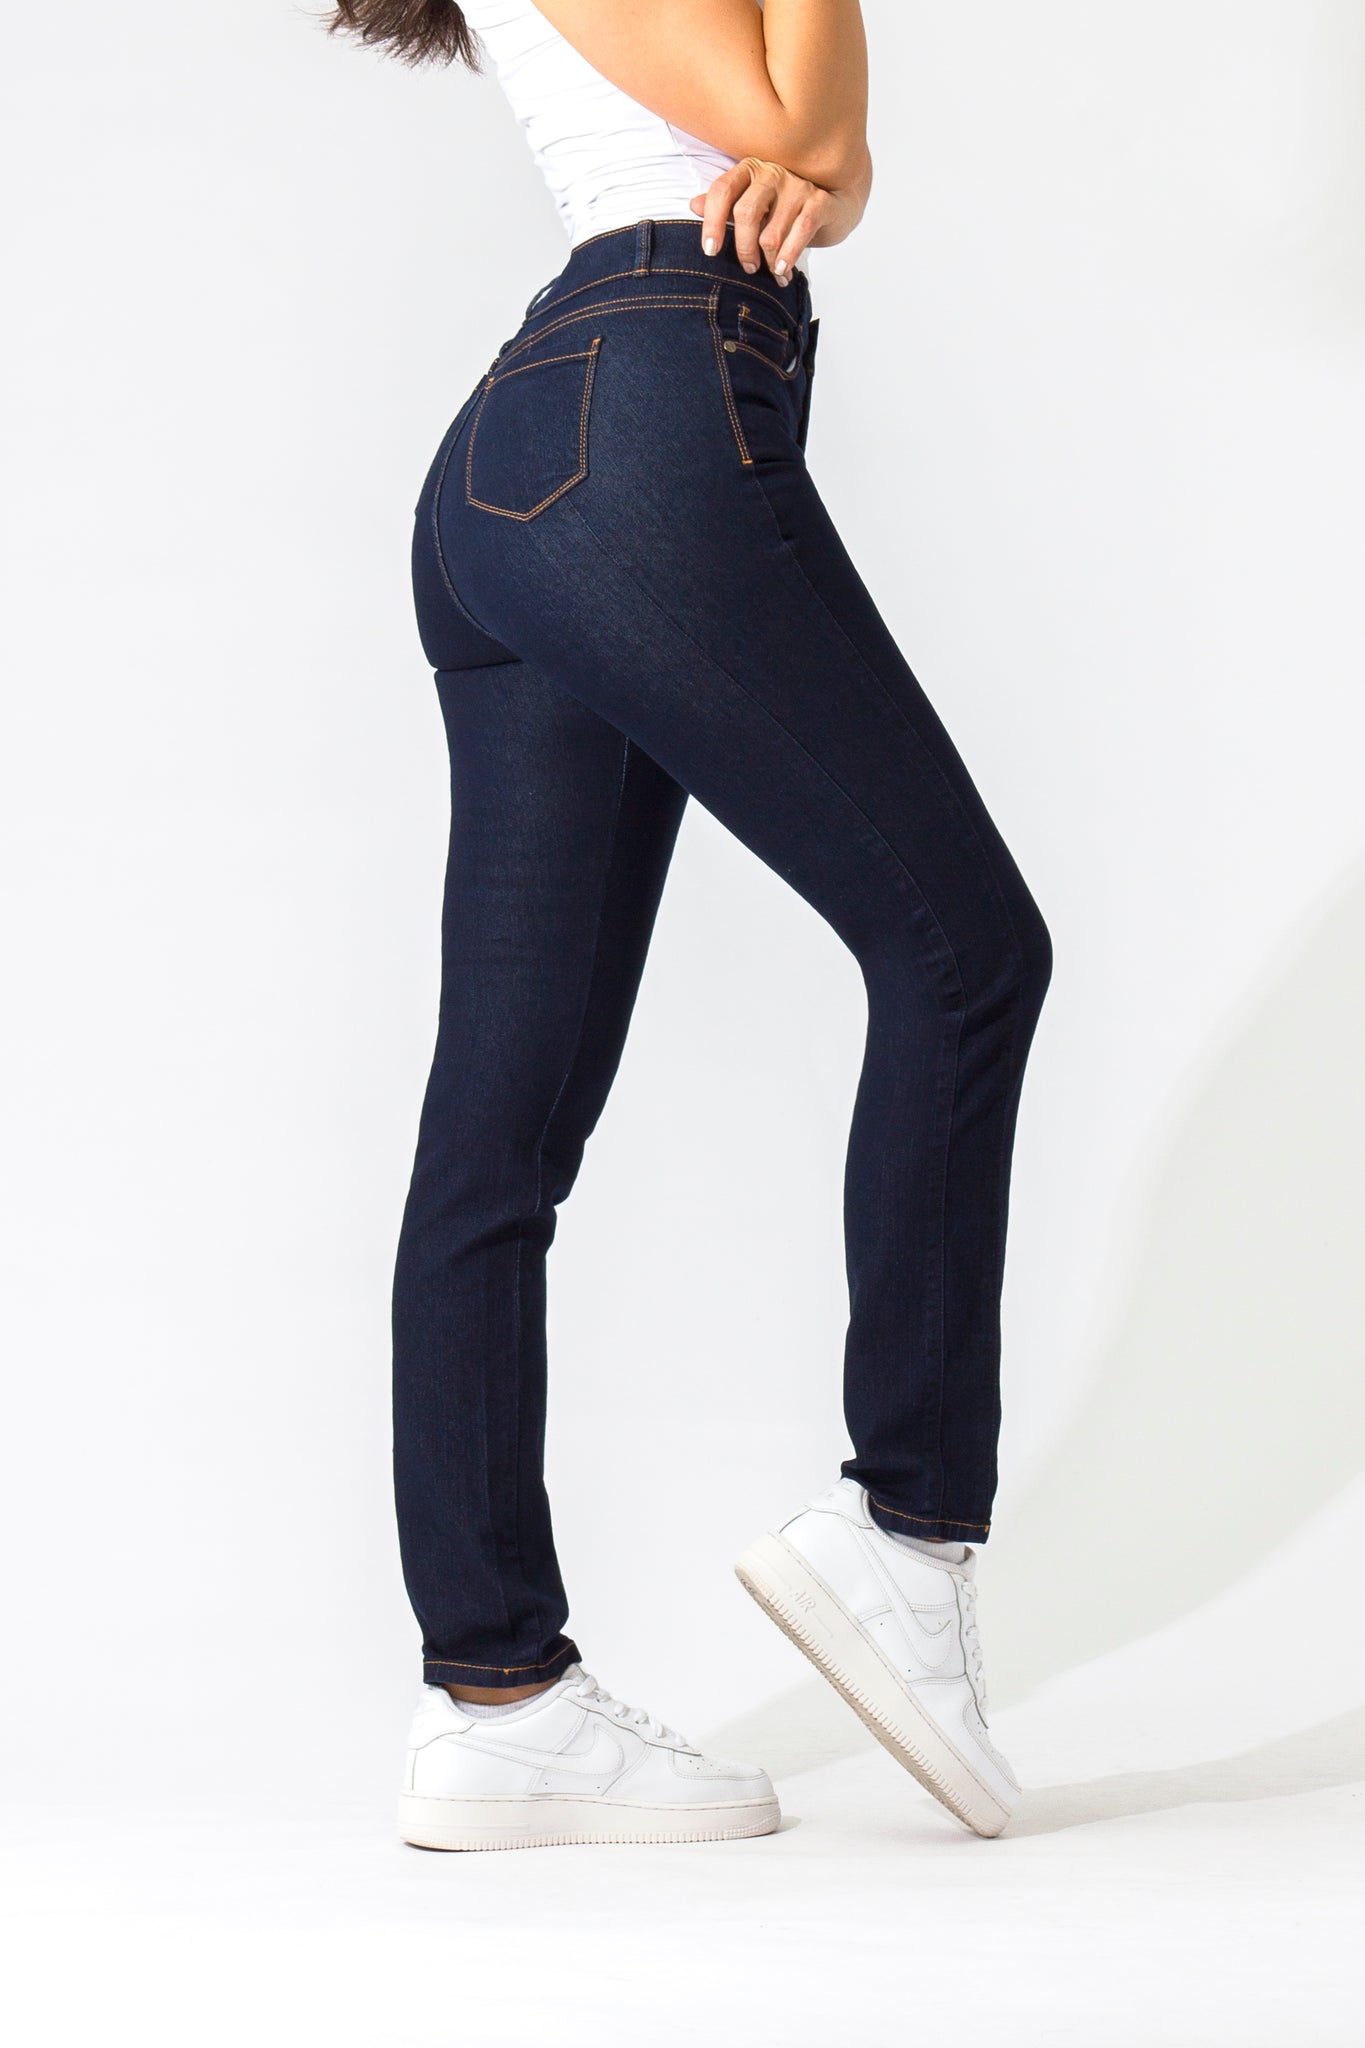 OHPOMP!® Basics, Cintura Alta Straight Jeans Azul Oscuro OP1006